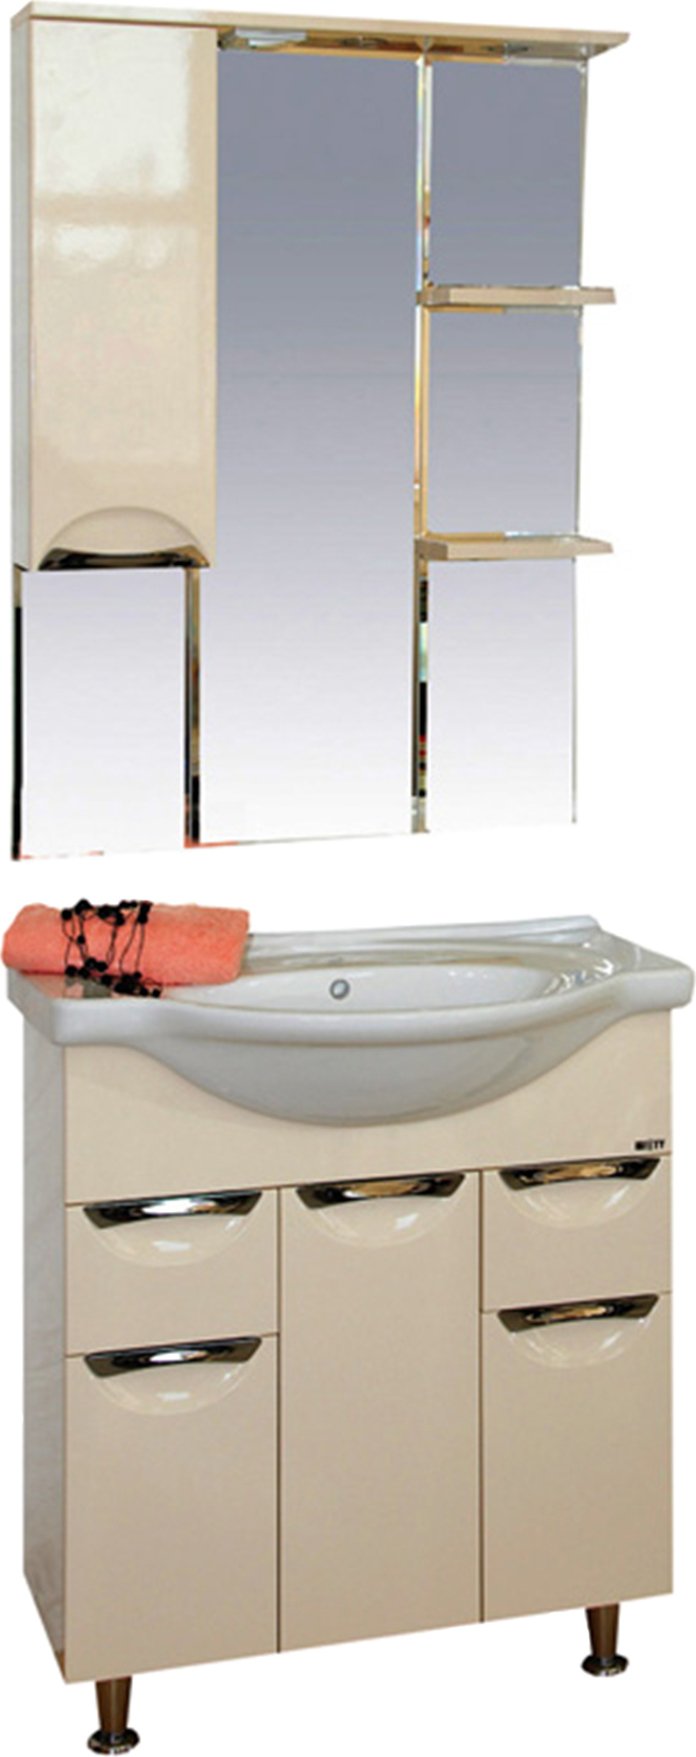 Мебель для ванной Misty Орхидея 75 бежевая эмаль, комплект (гарнитур), бежевый  - купить со скидкой